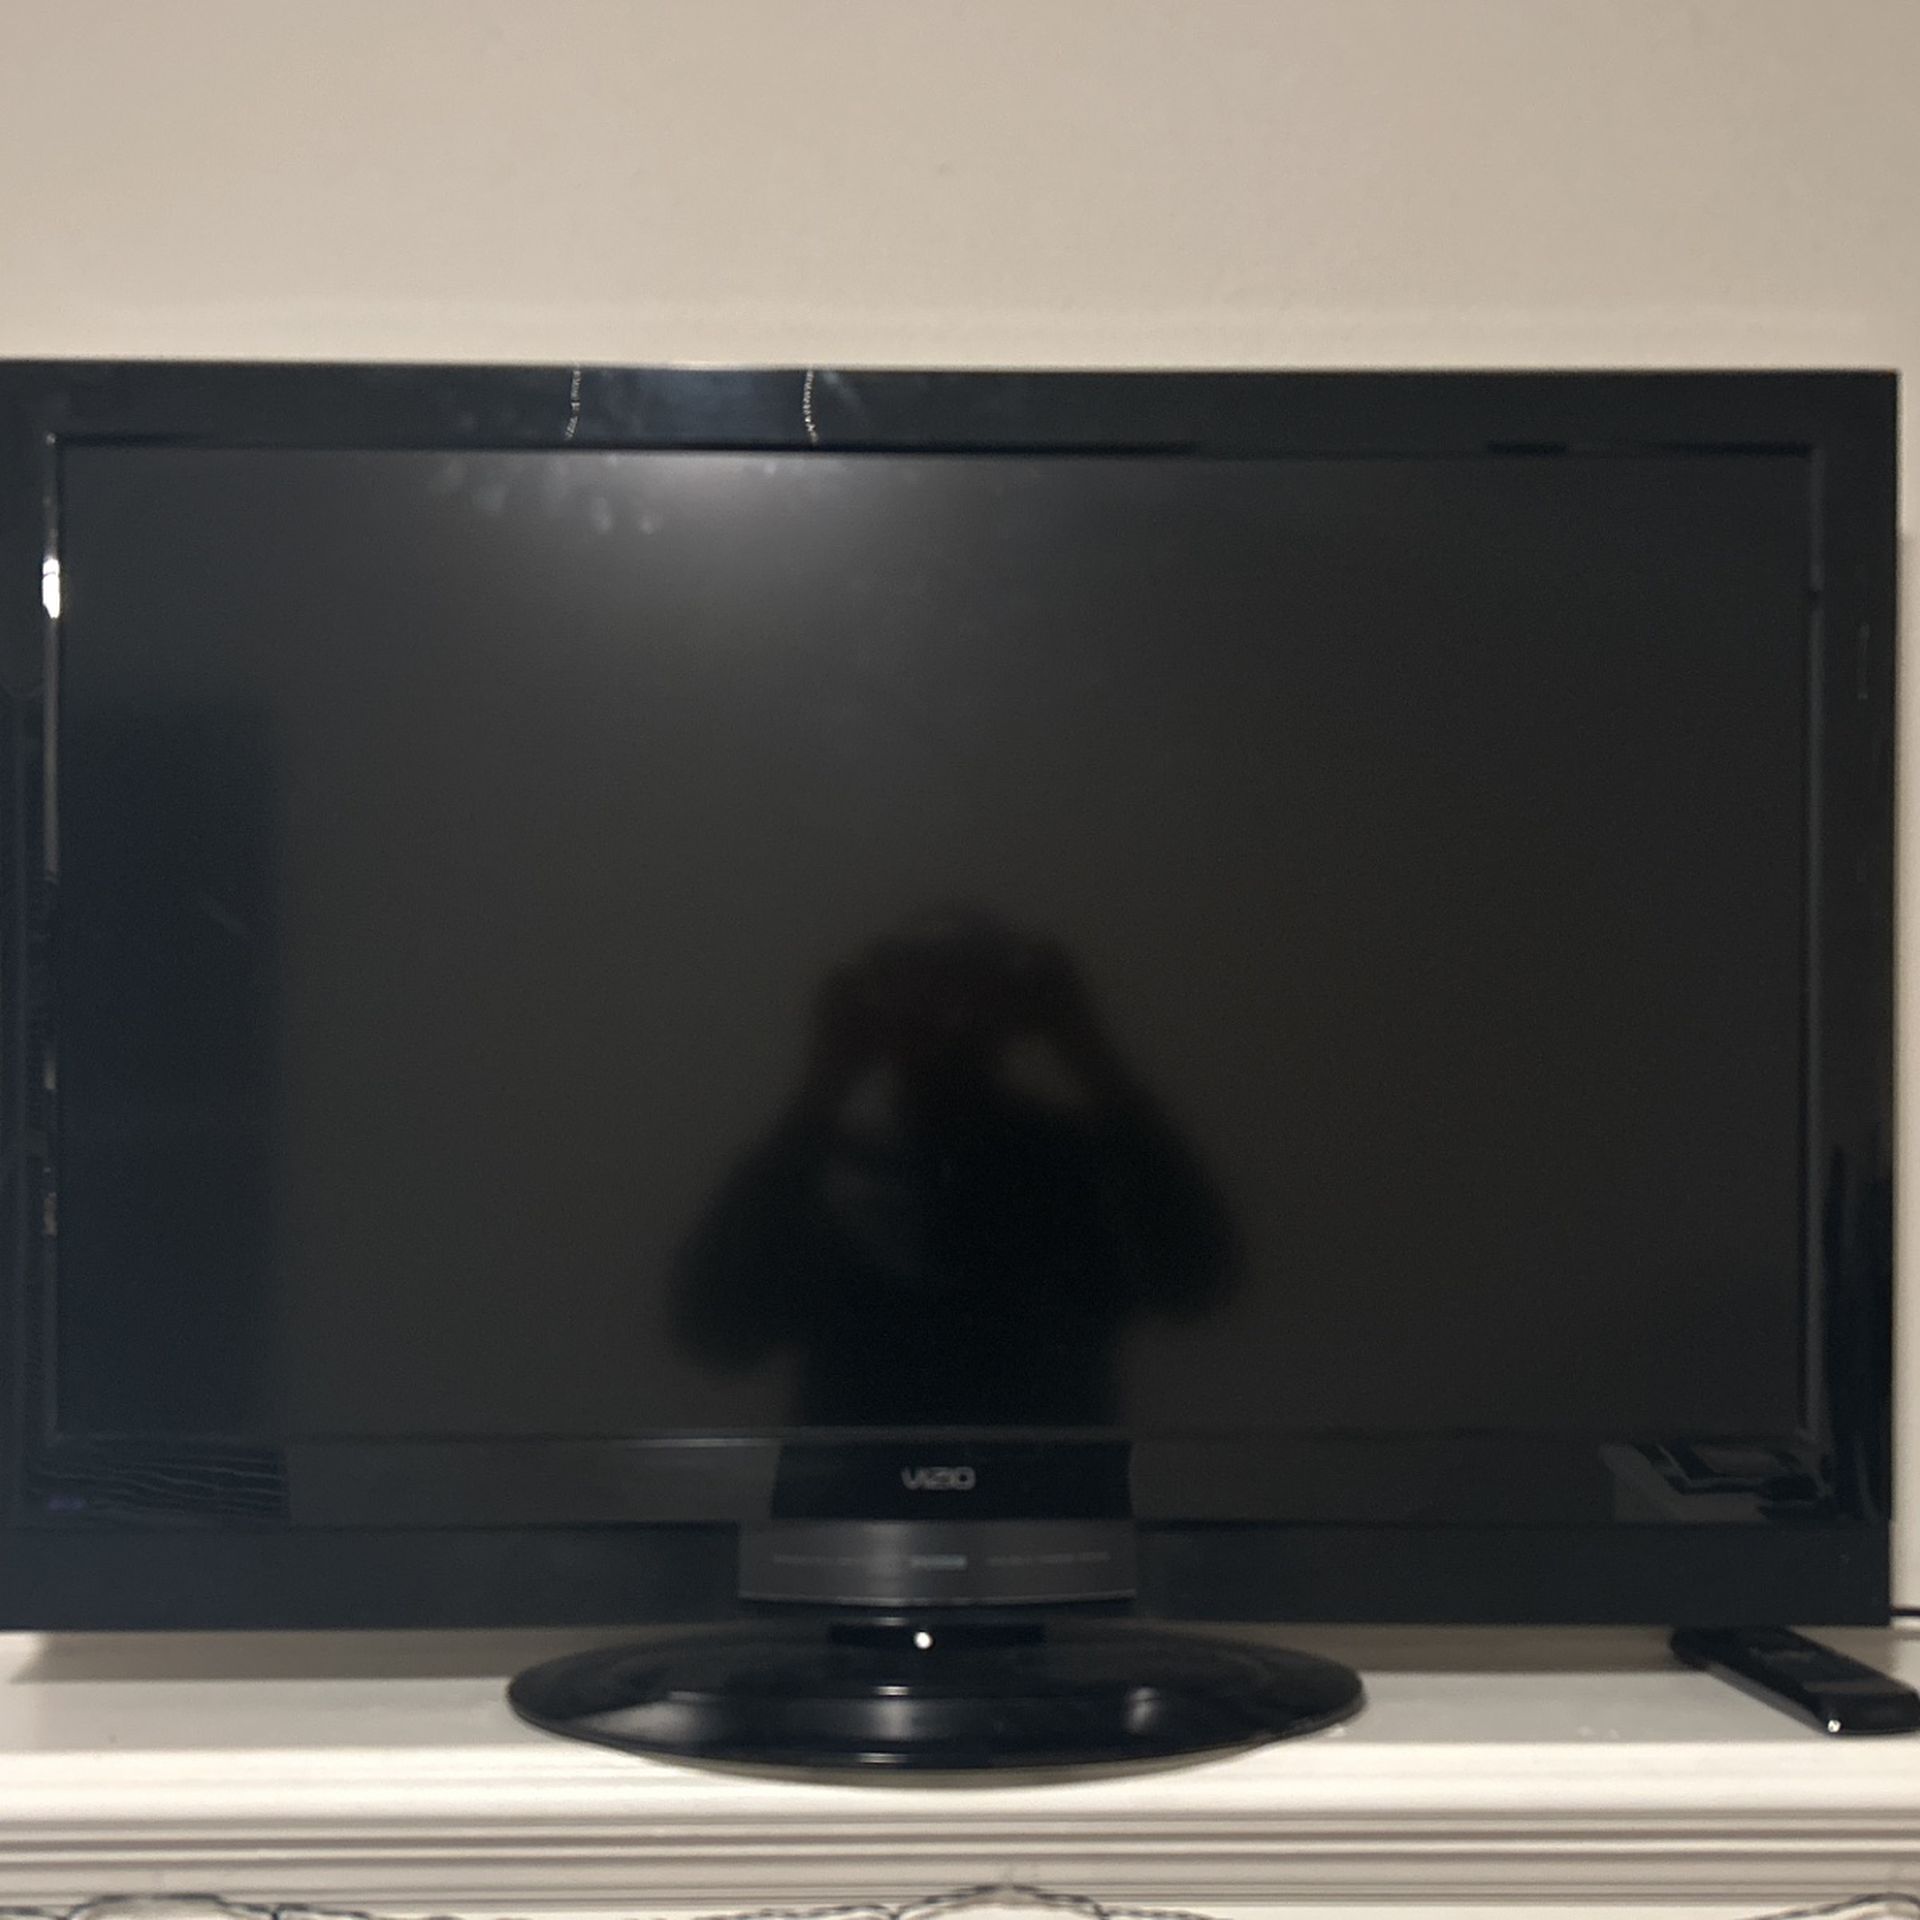 37” Vizio Flatscreen TV